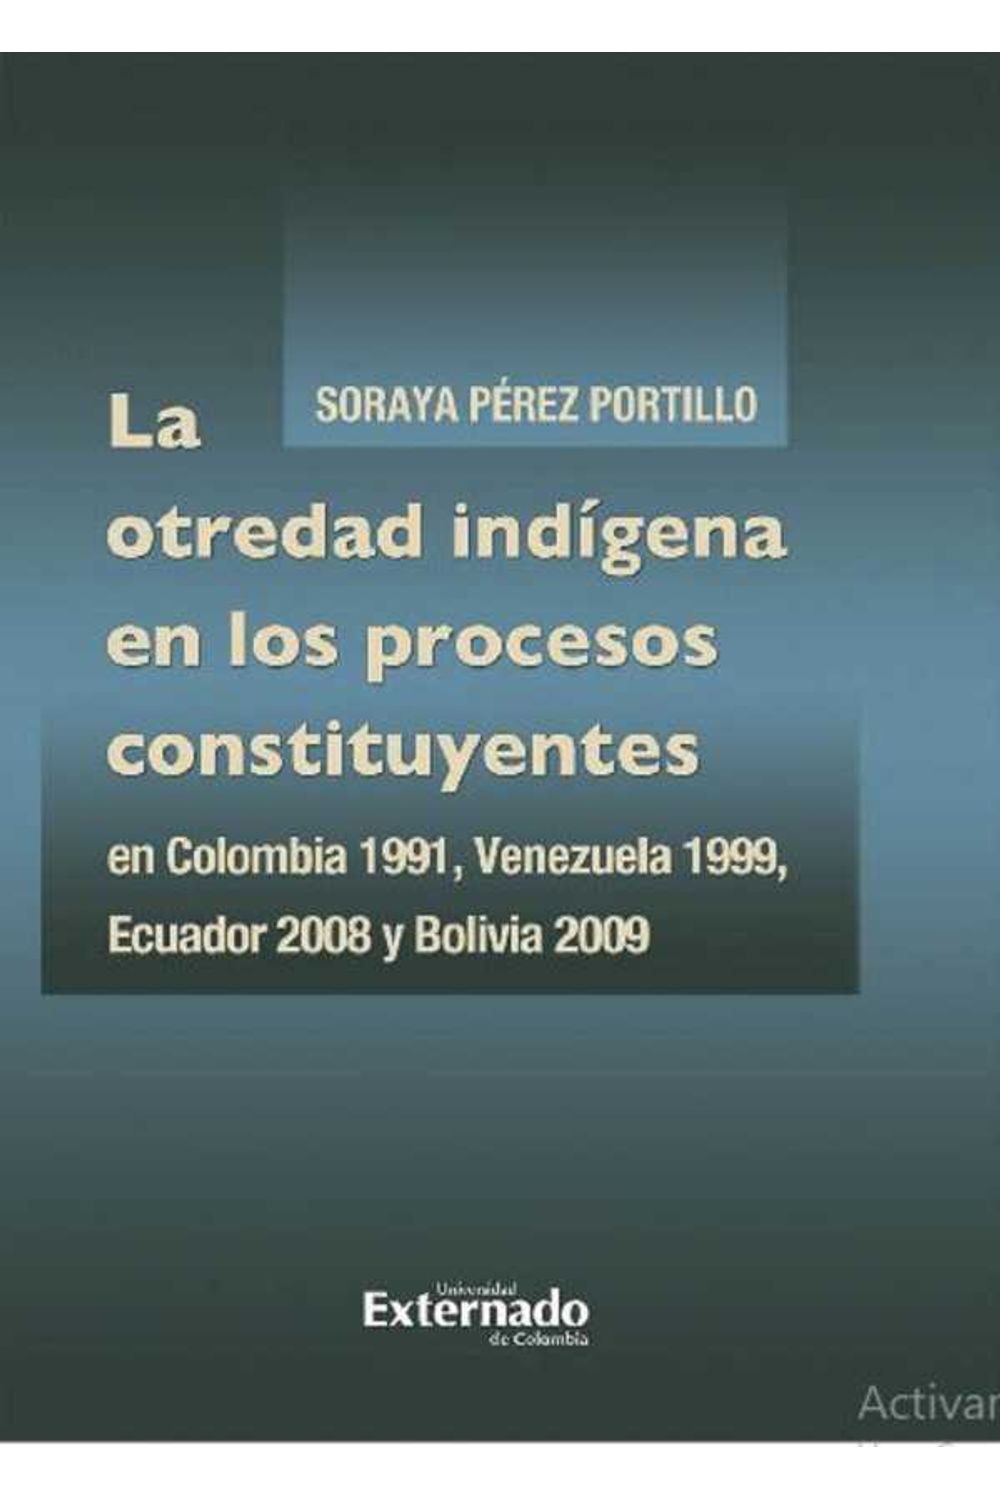 bw-la-otredad-indiacutegena-en-los-procesos-constituyentes-en-colombia-1991-venezuela-1999-ecuador-2008-y-bolivia-2009-u-externado-de-colombia-9789587904055